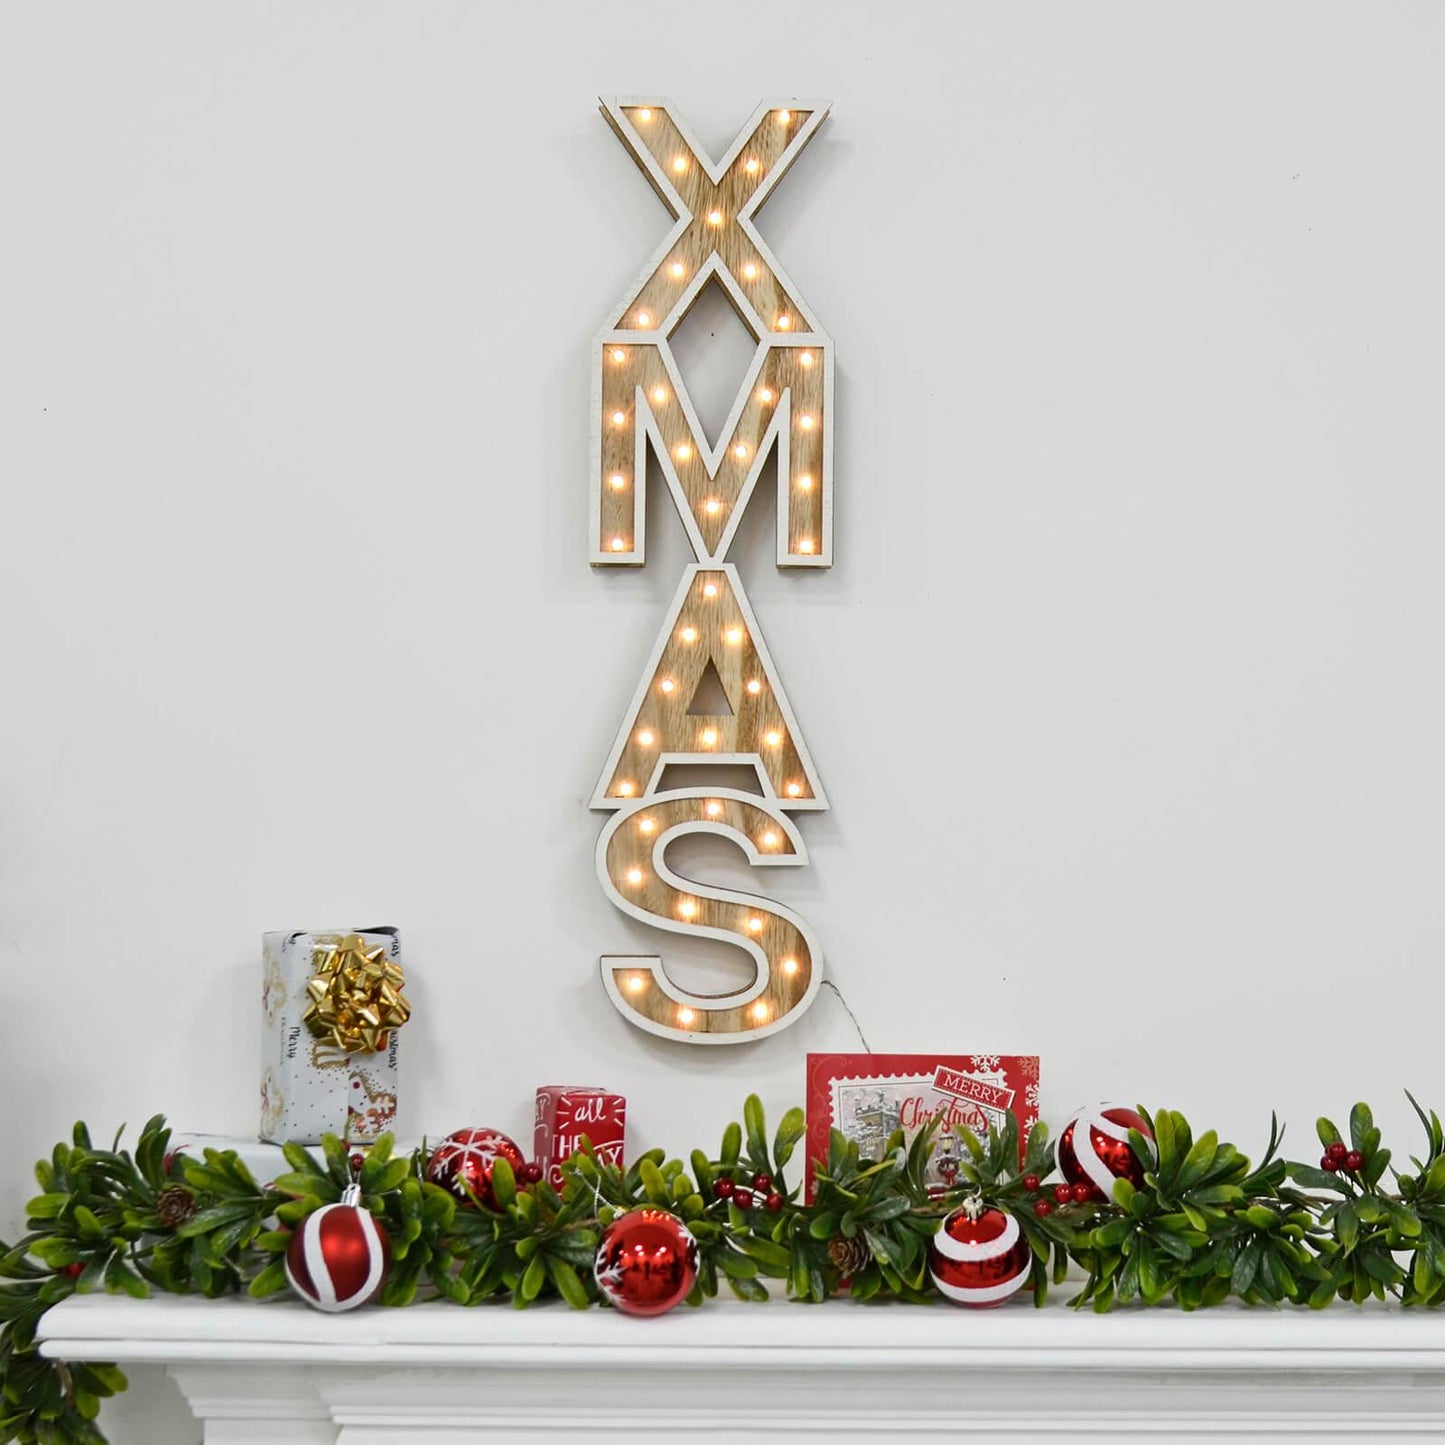 Mr Crimbo 23" Light Up Wooden Christmas Sign Decorations - MrCrimbo.co.uk -christmas decor